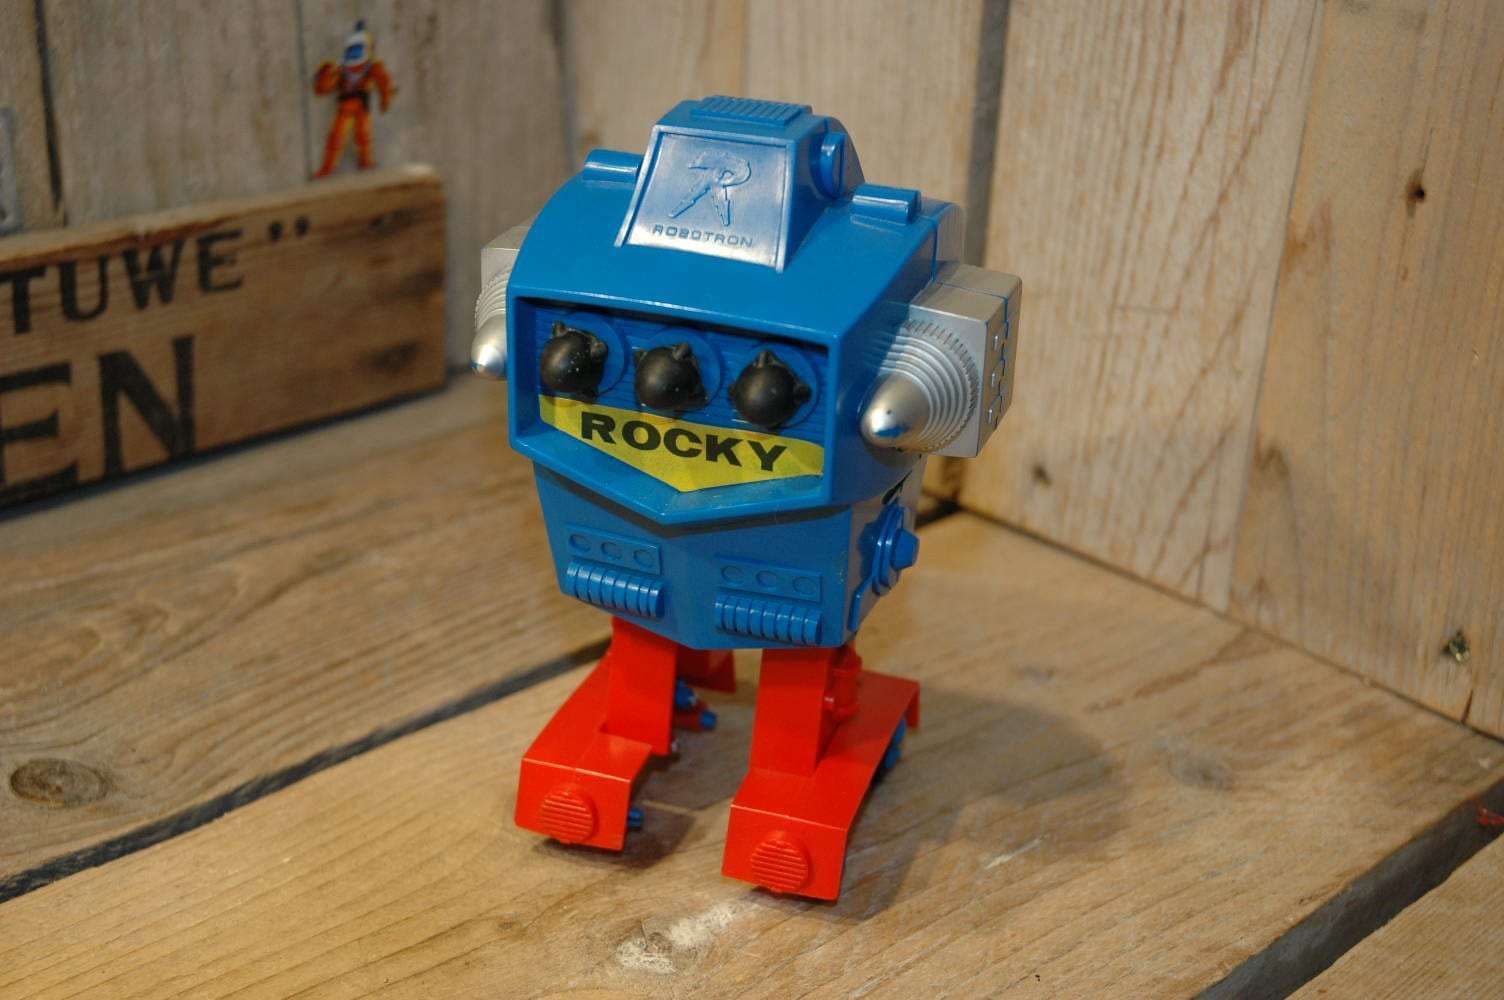 Topper toys - Rocky